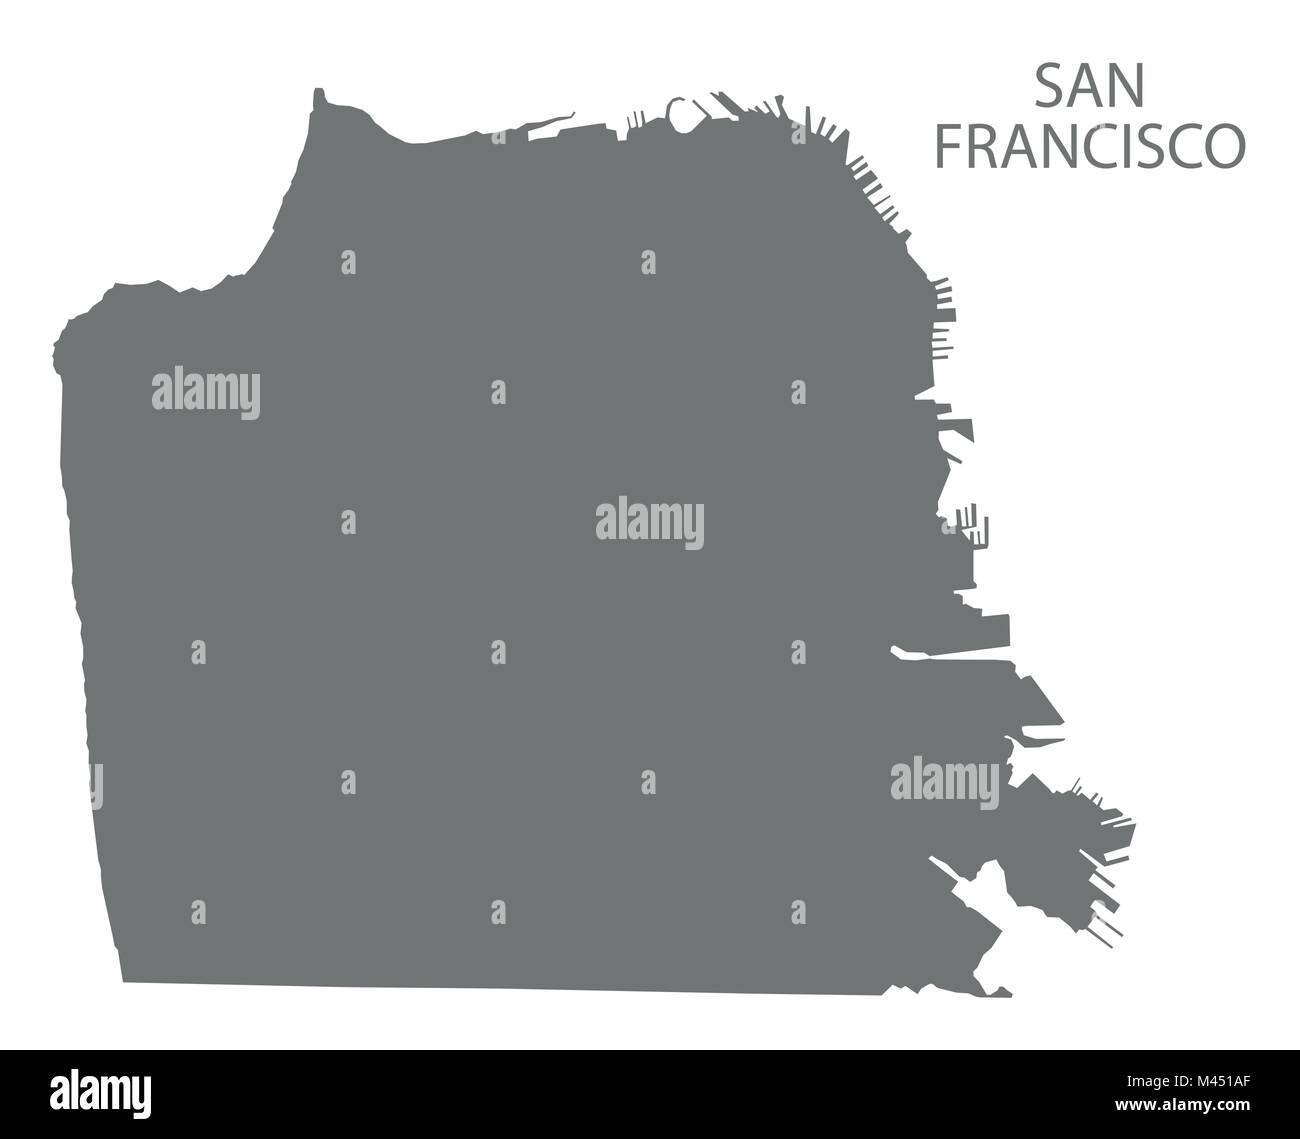 Frasi Natale San Francisco.Mappa Della Citta Di San Francisco Immagini E Fotos Stock Alamy